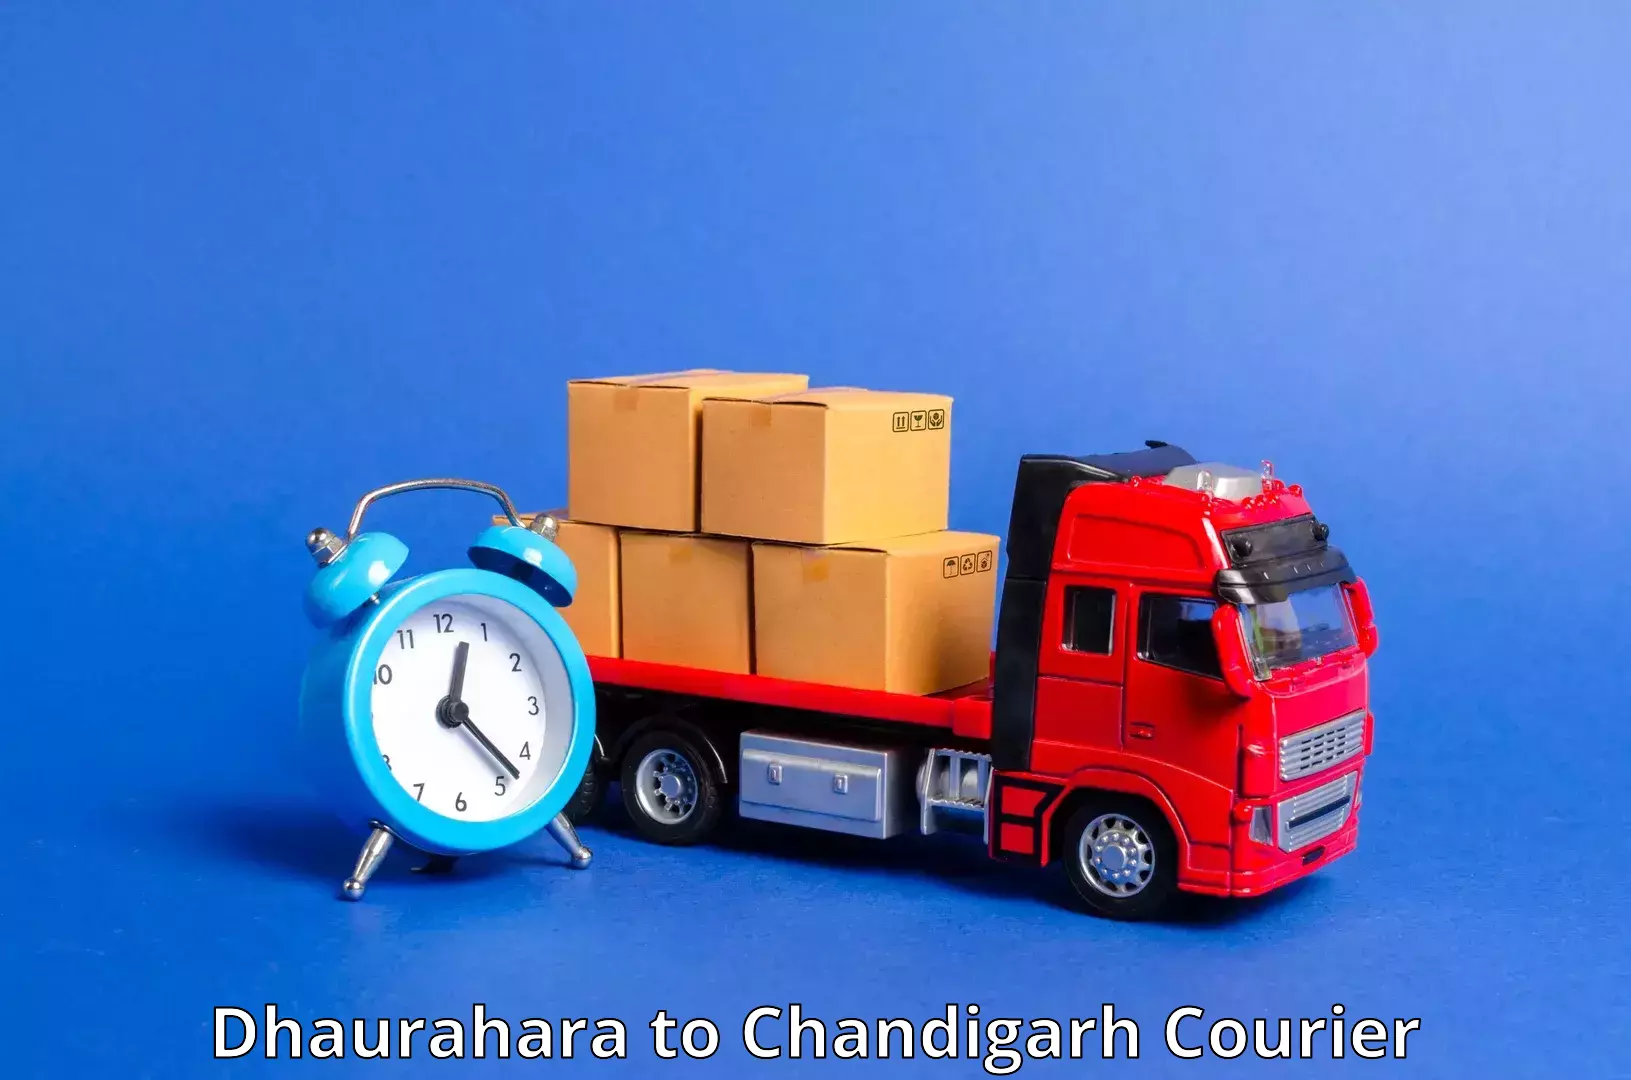 High-speed parcel service Dhaurahara to Kharar